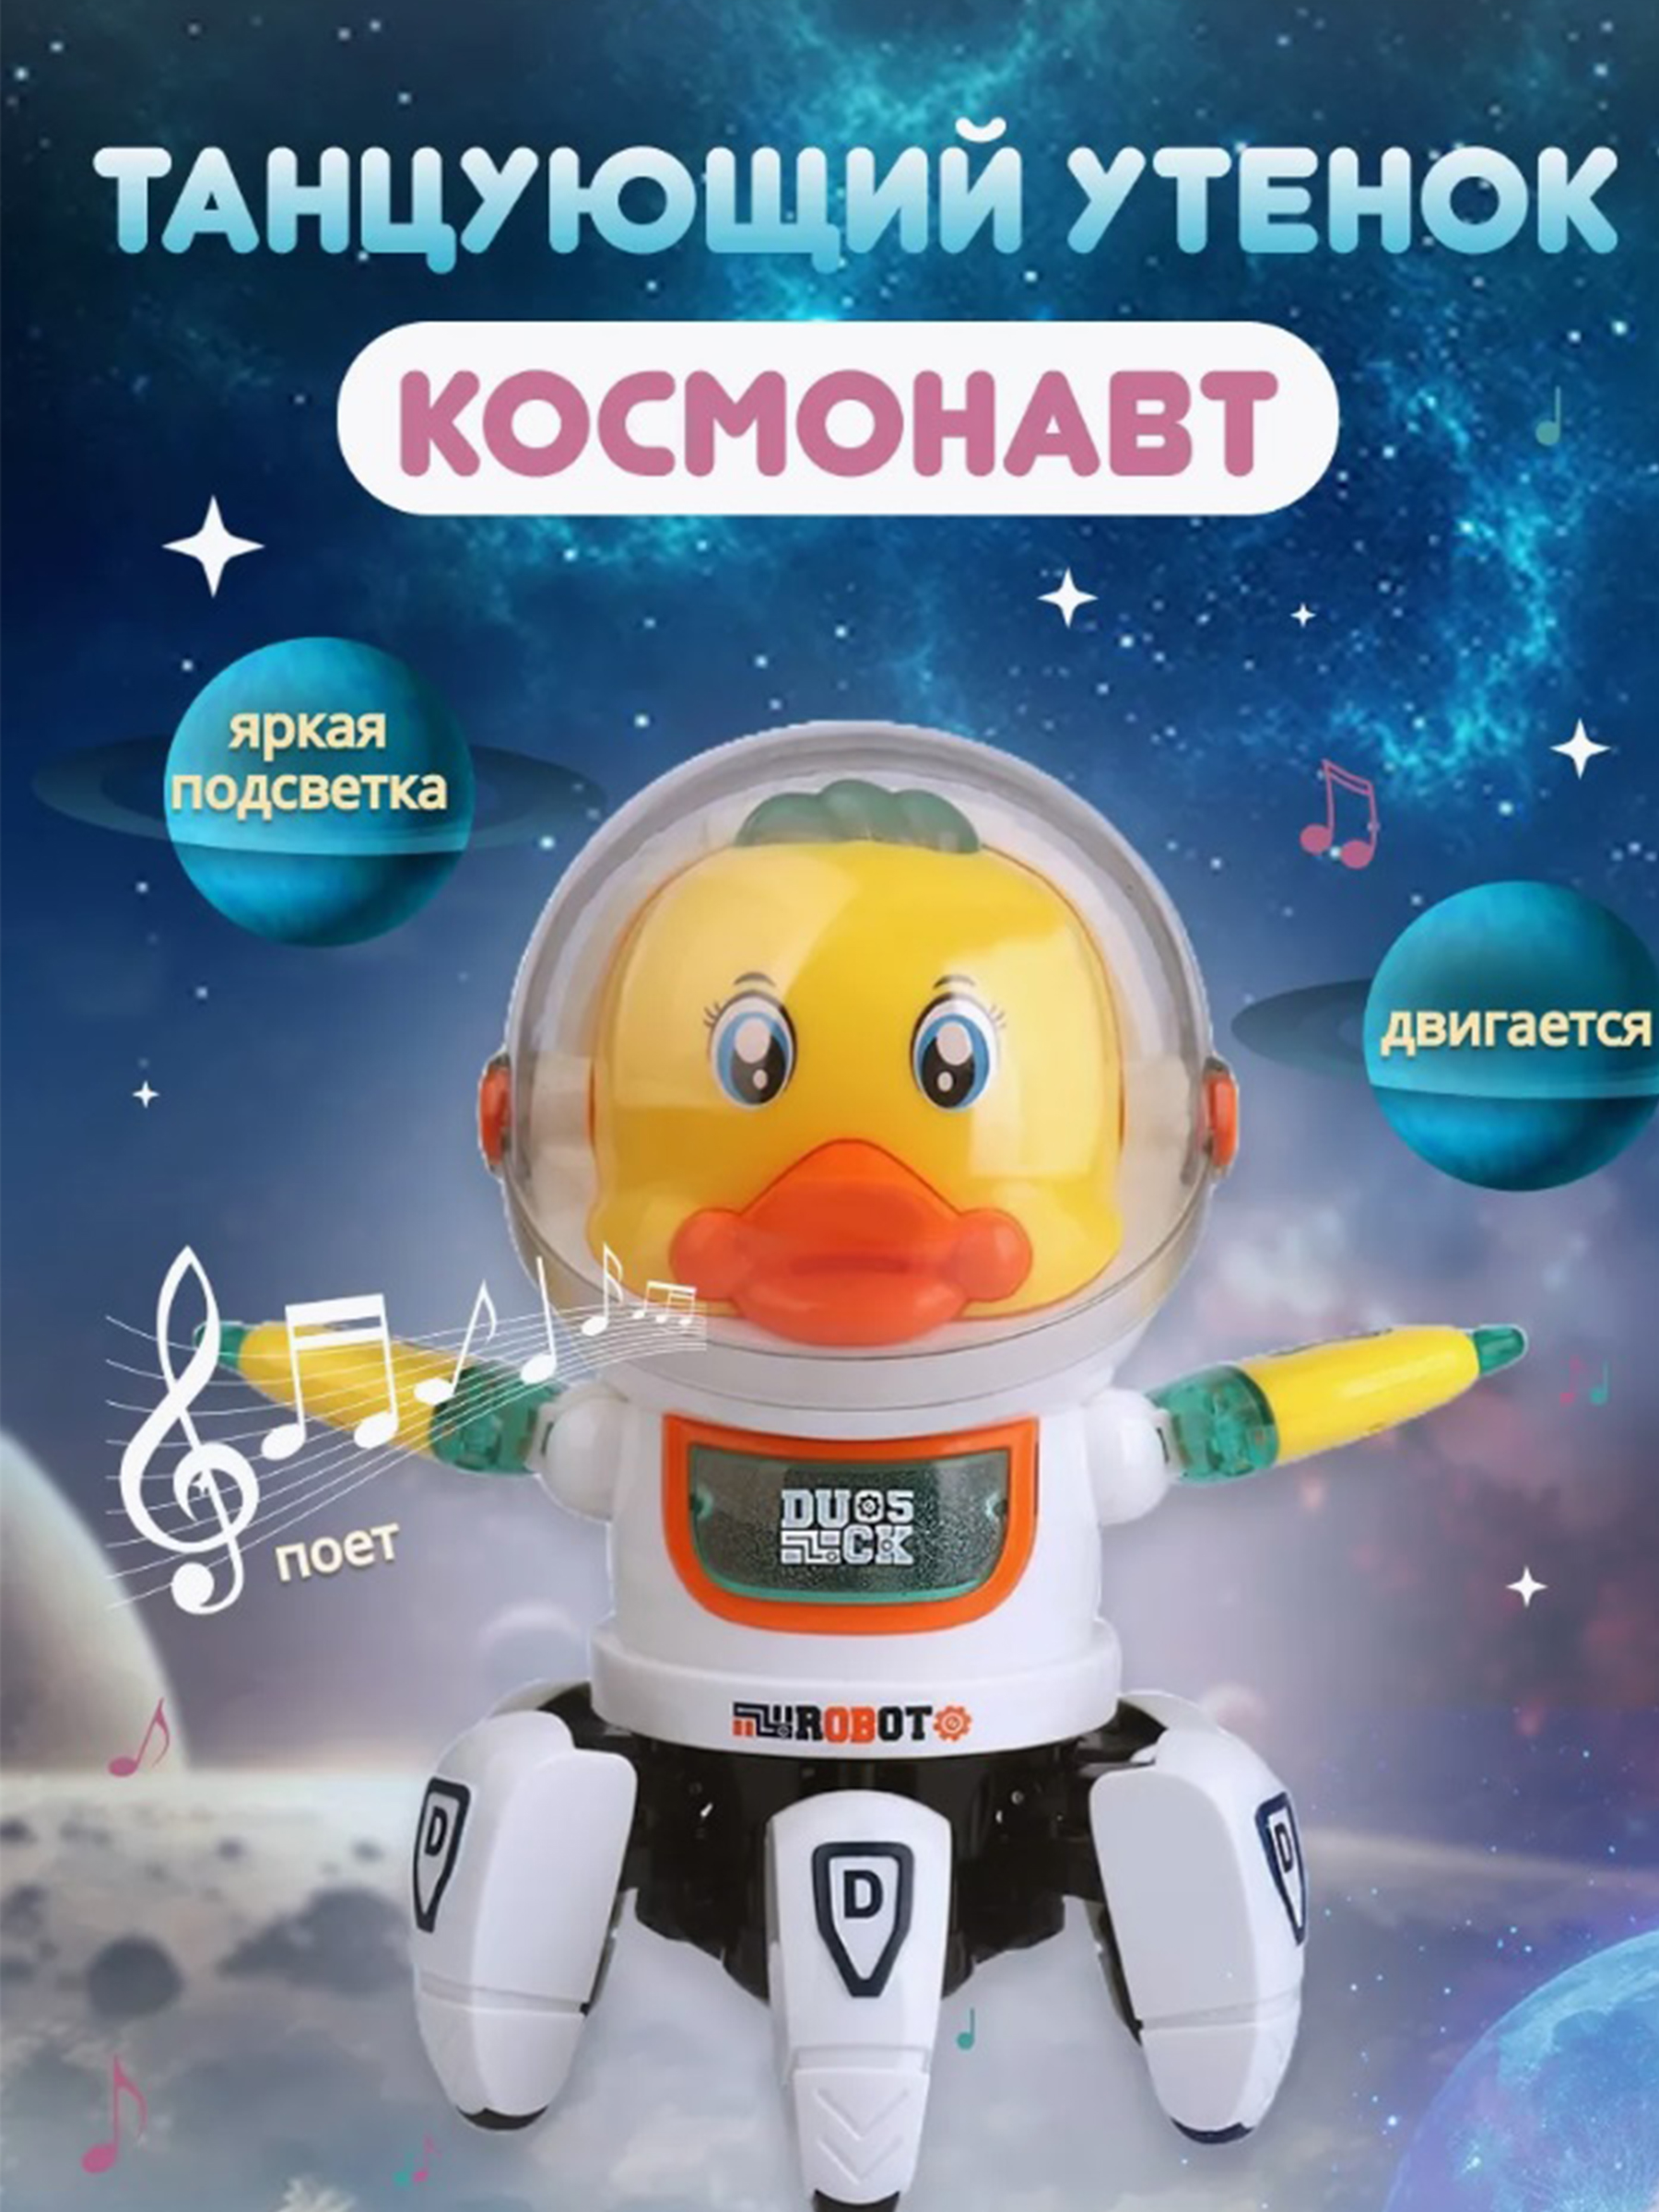 Робот интерактивная игрушка ТОТОША танцующий светящийся робот утка космонавт - фото 1